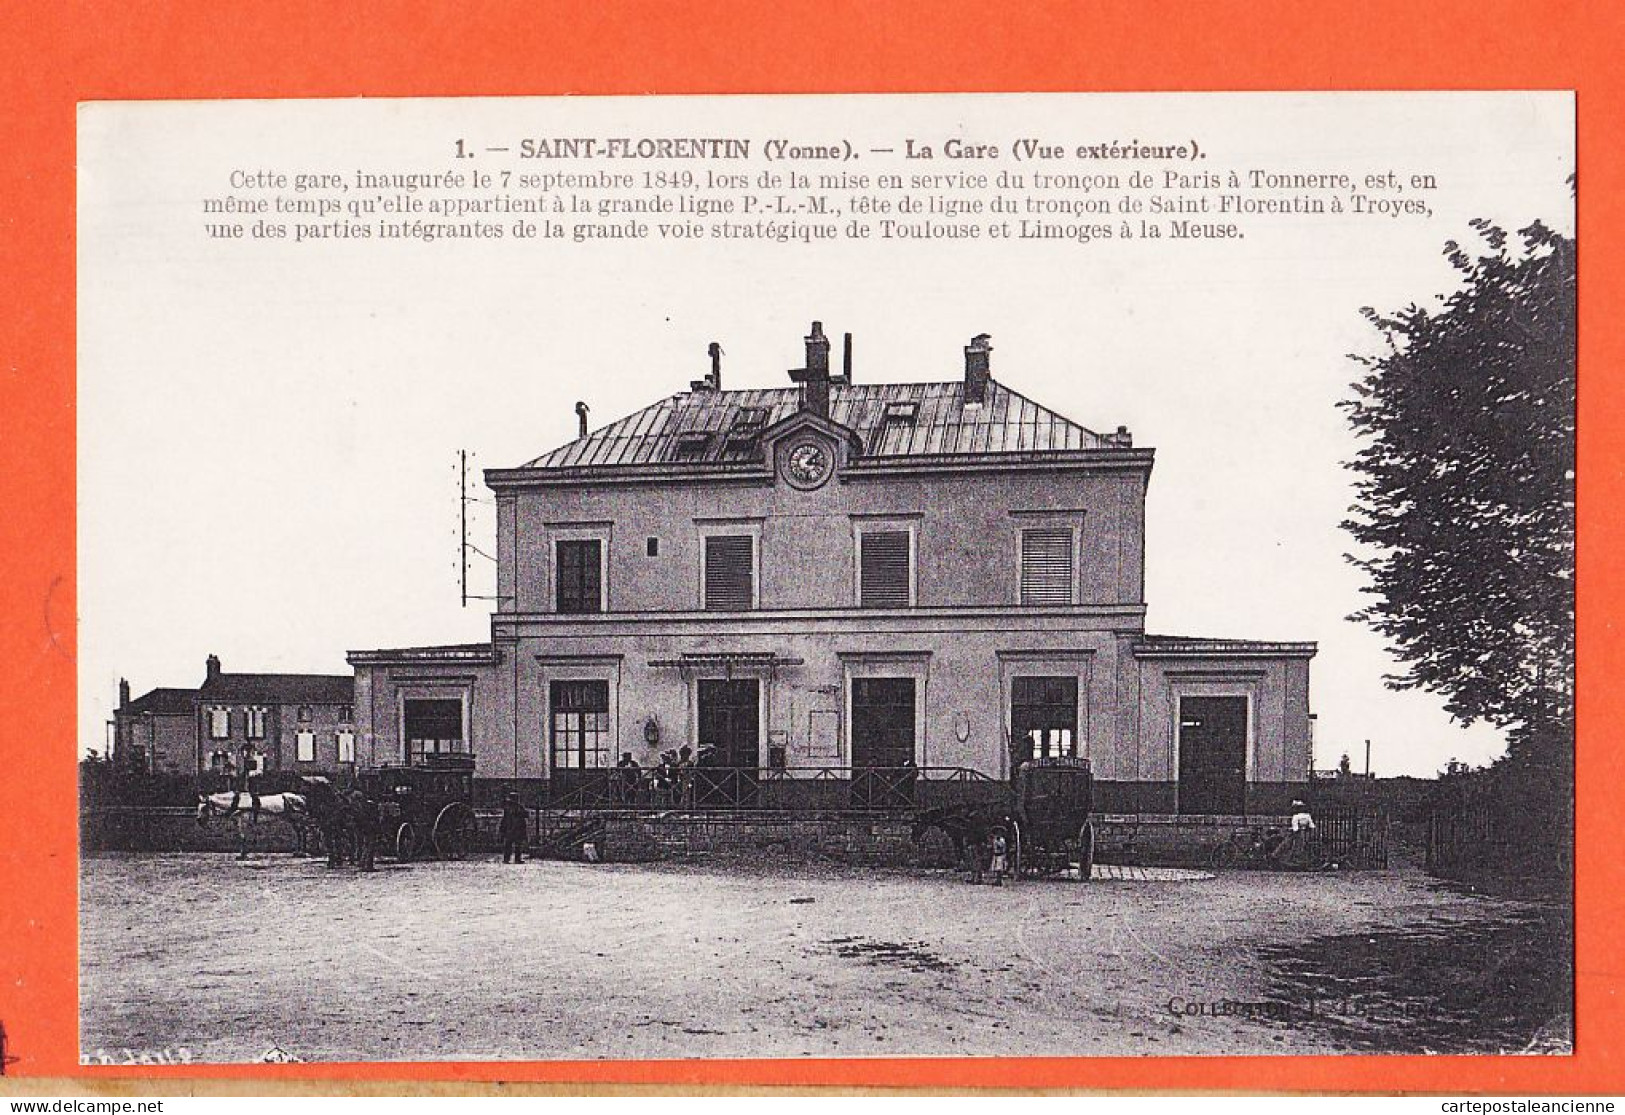 31692 / SAINT-FLORENTIN St 89-Yonne Gare PLM Tronçon TROYES Vue Extérieure 1919 NEURDEIN 1 - Saint Florentin